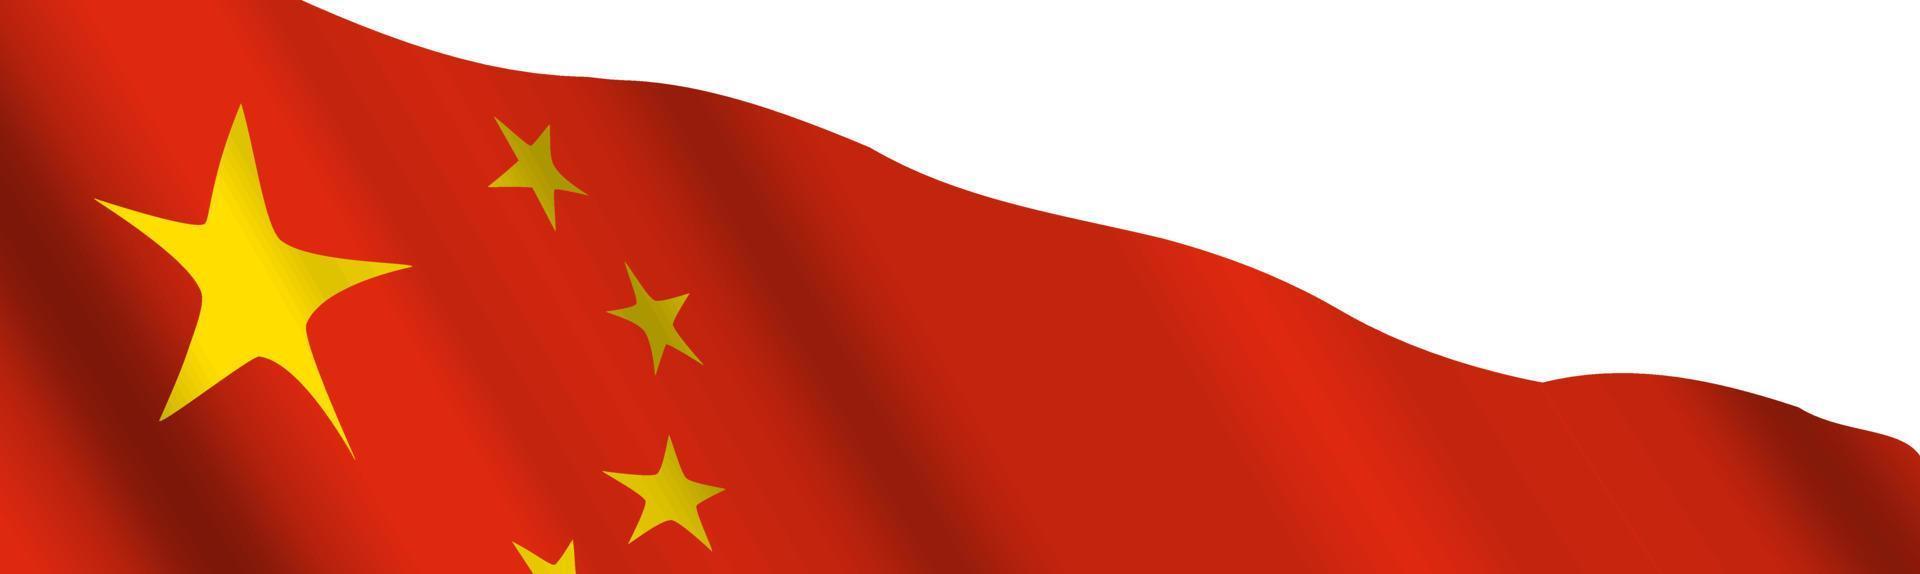 China ondeando la bandera para el encabezado de banner, sitio web o boletín. fondo con la bandera nacional de china. vector